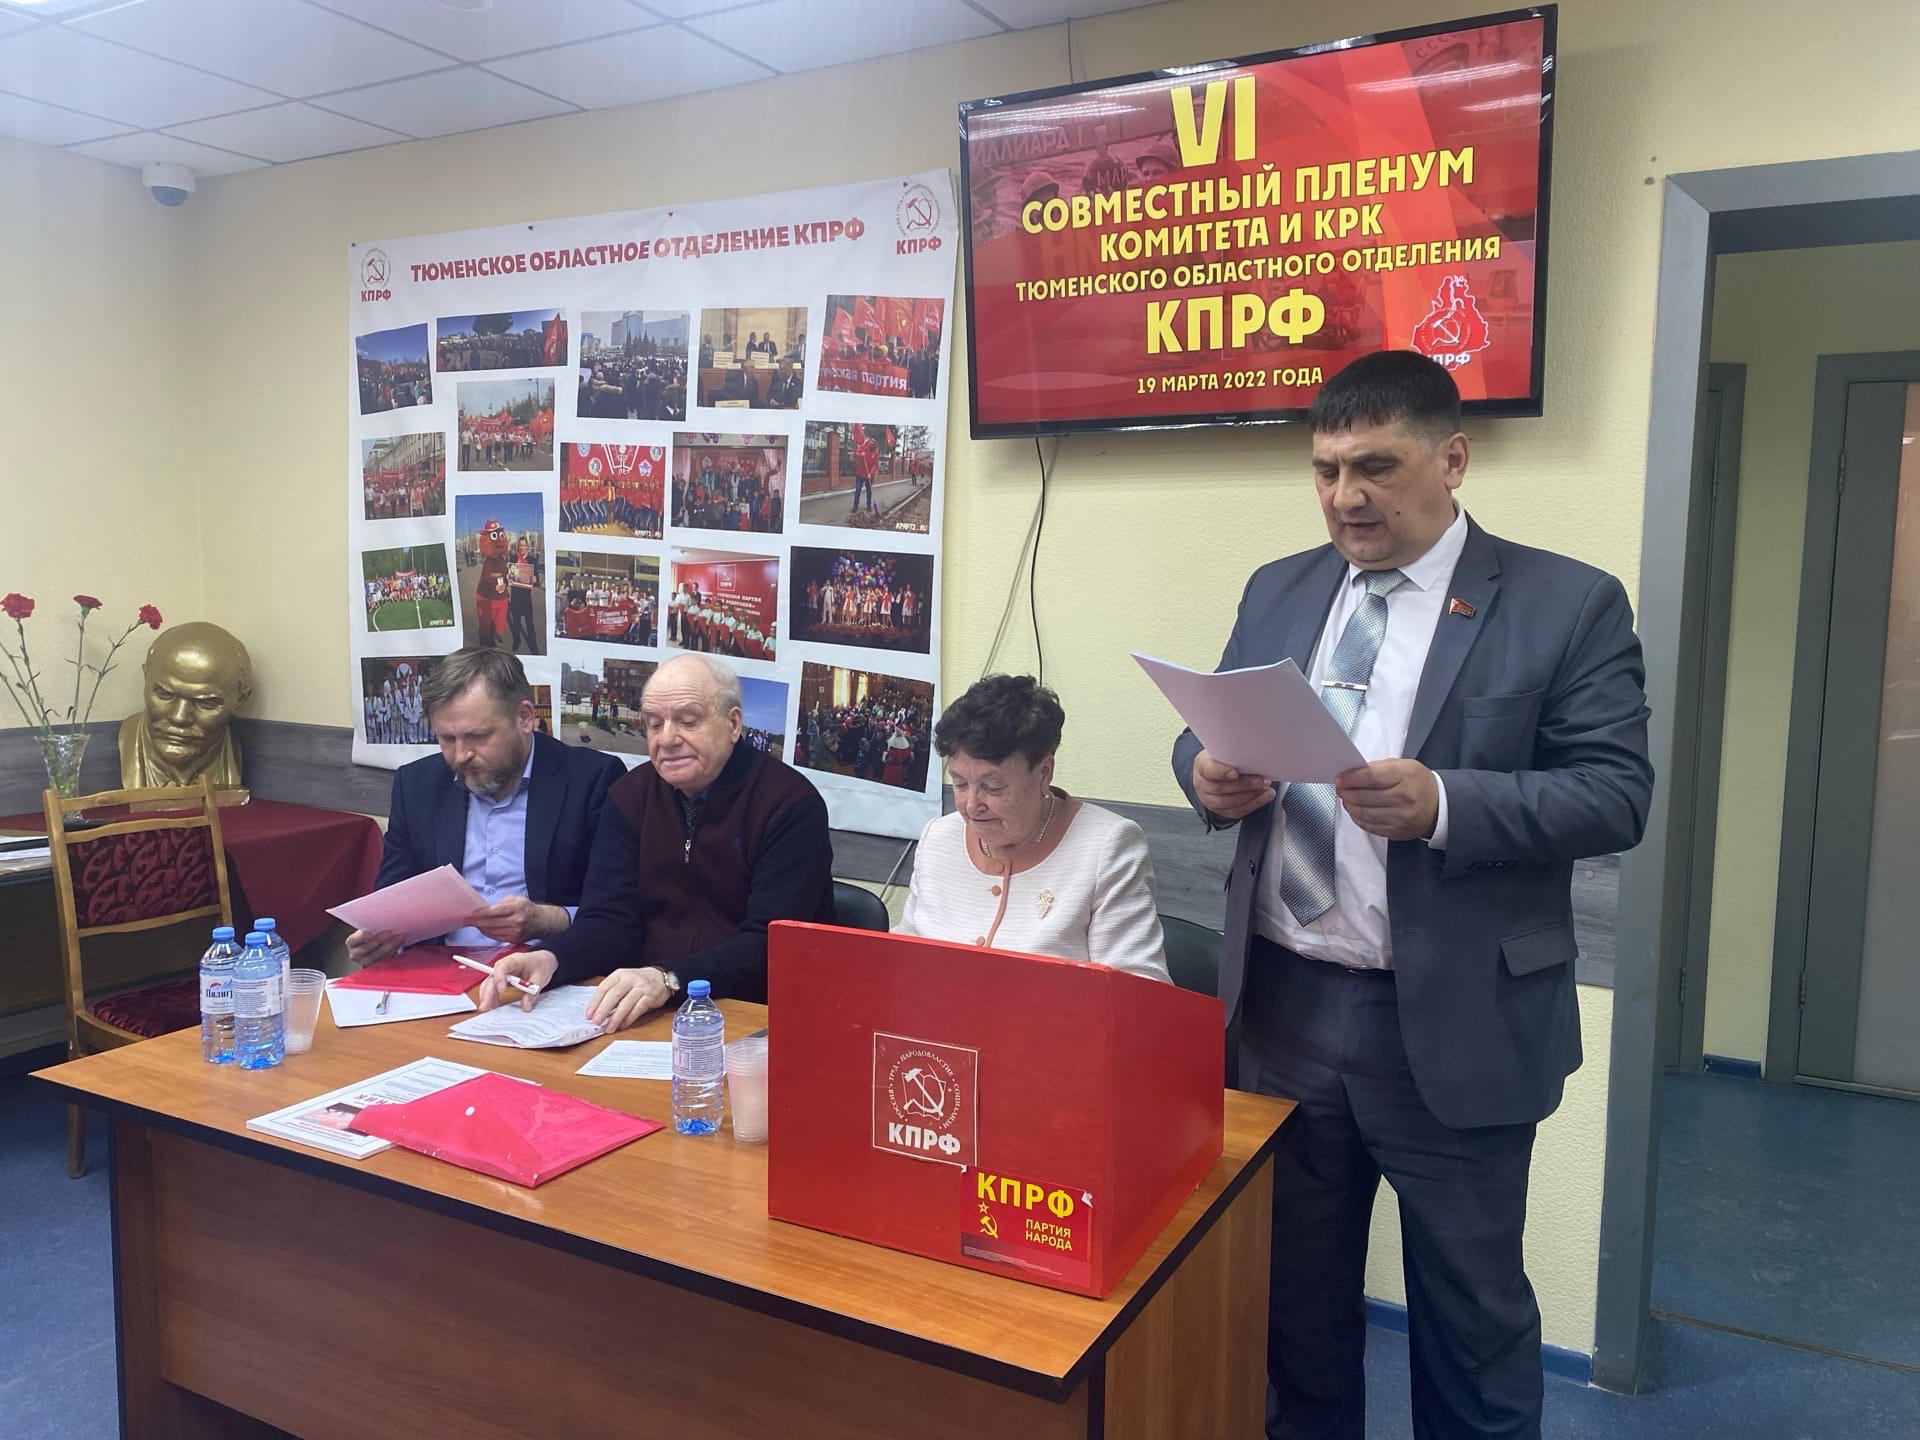 19 марта состоялся очередной Пленум Комитета Тюменского областного отделения КПРФ